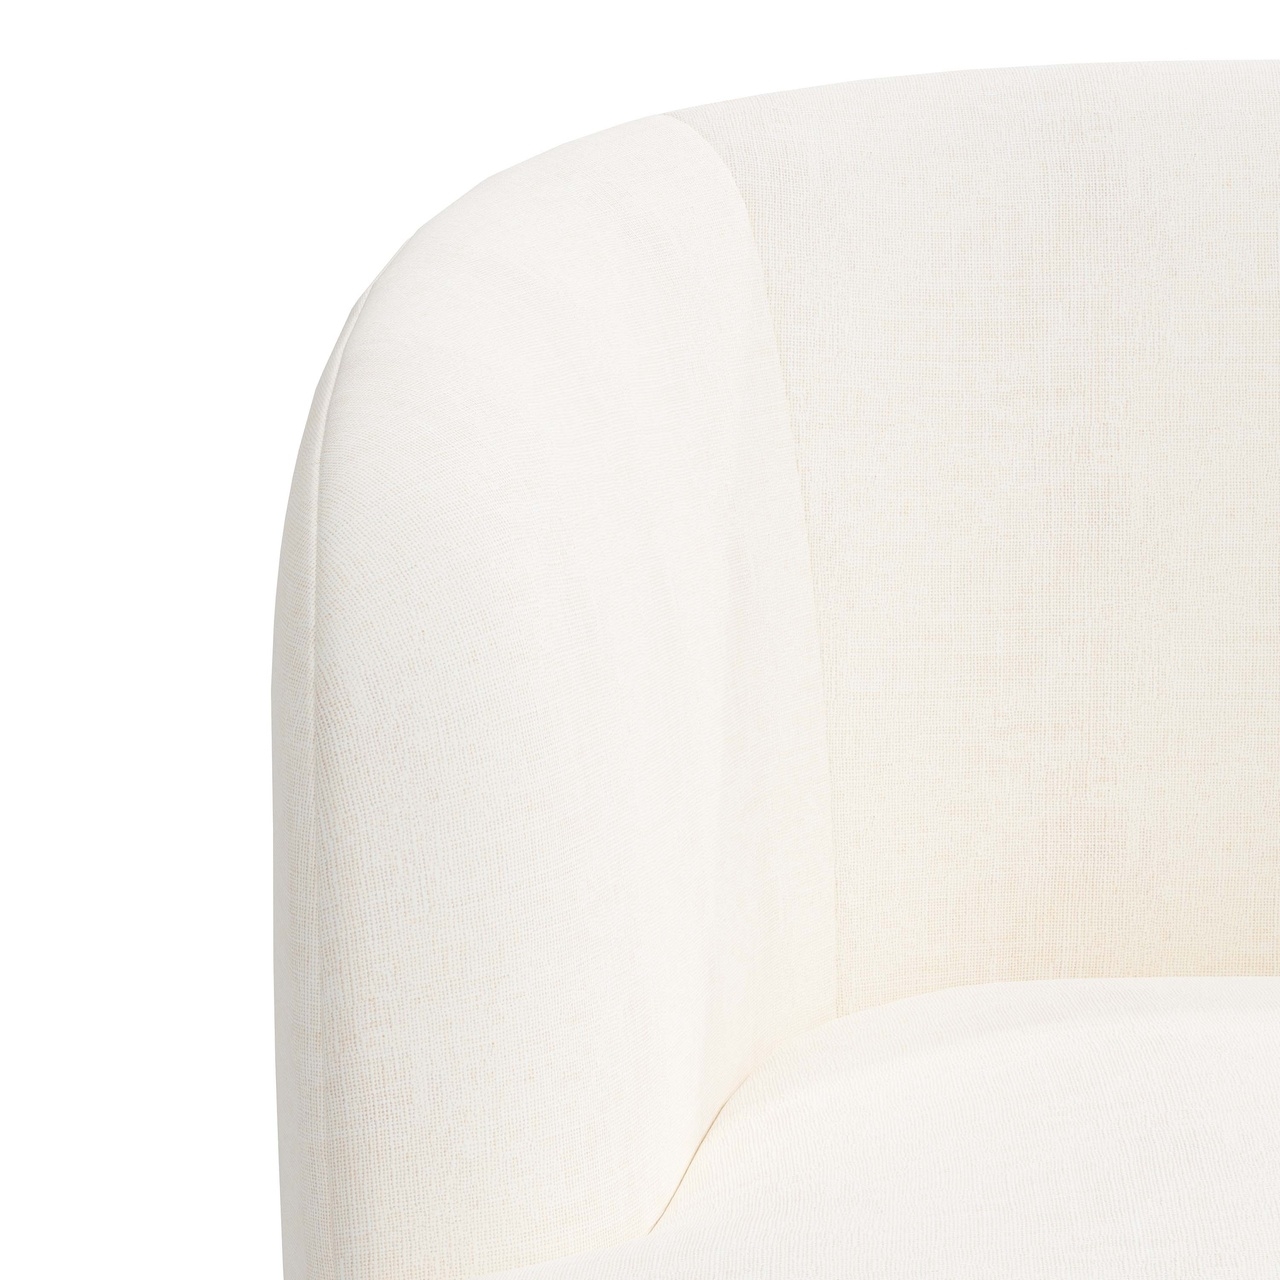 Collette Swivel Chair, Zuma White - Image 4